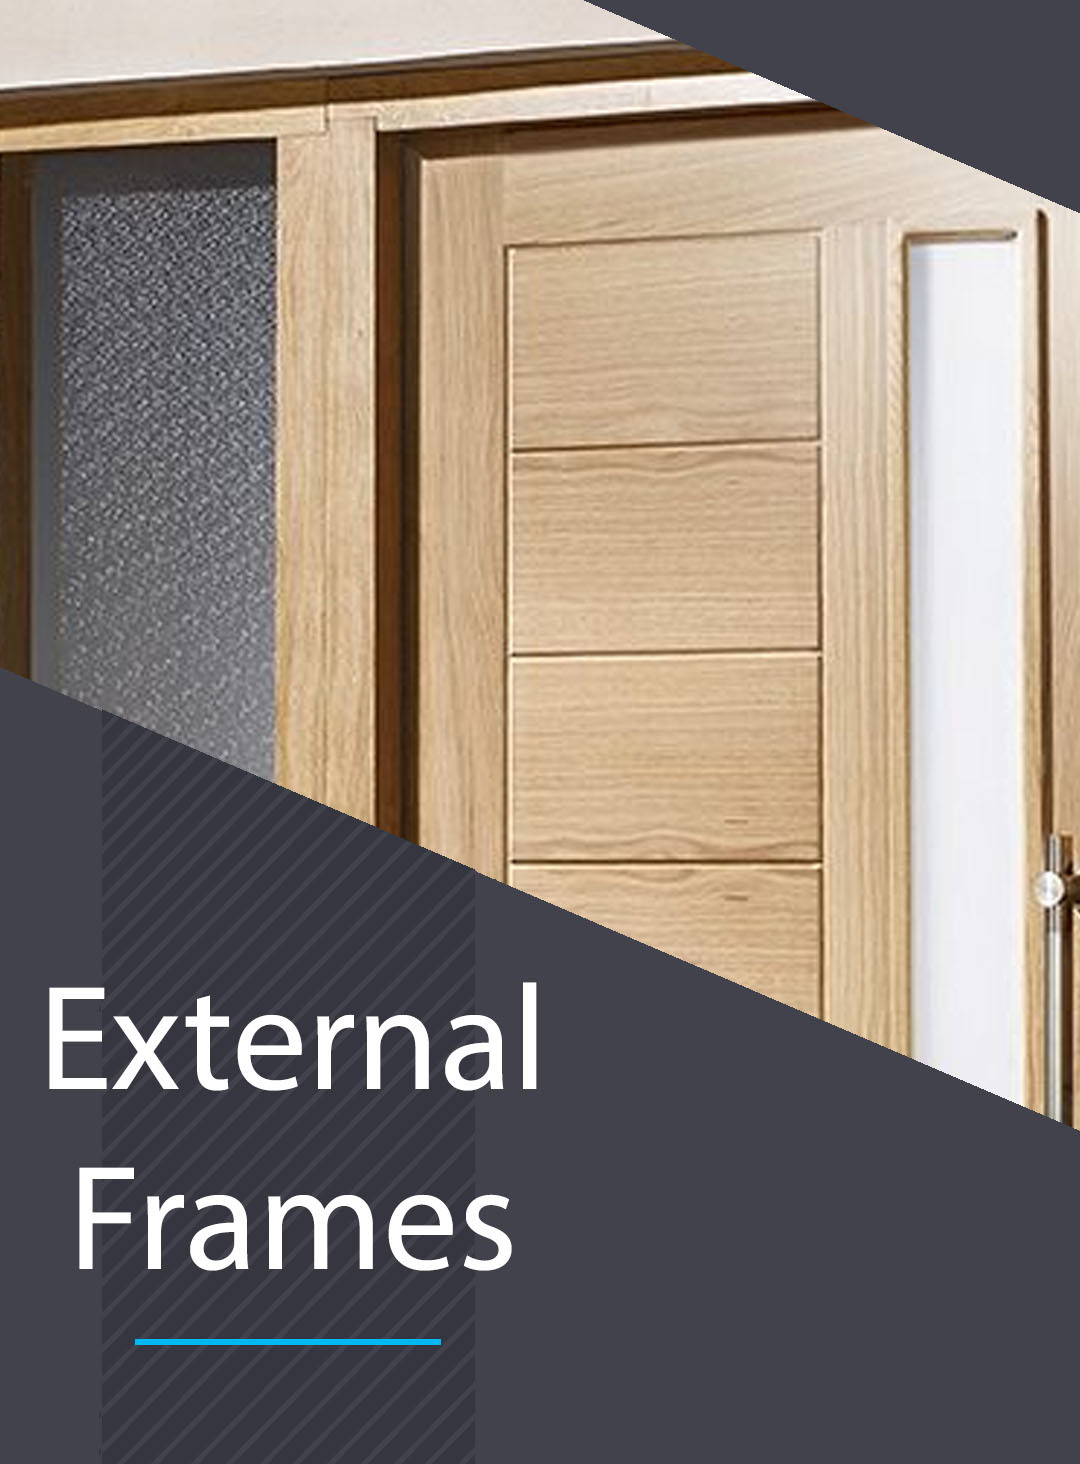 External Frames